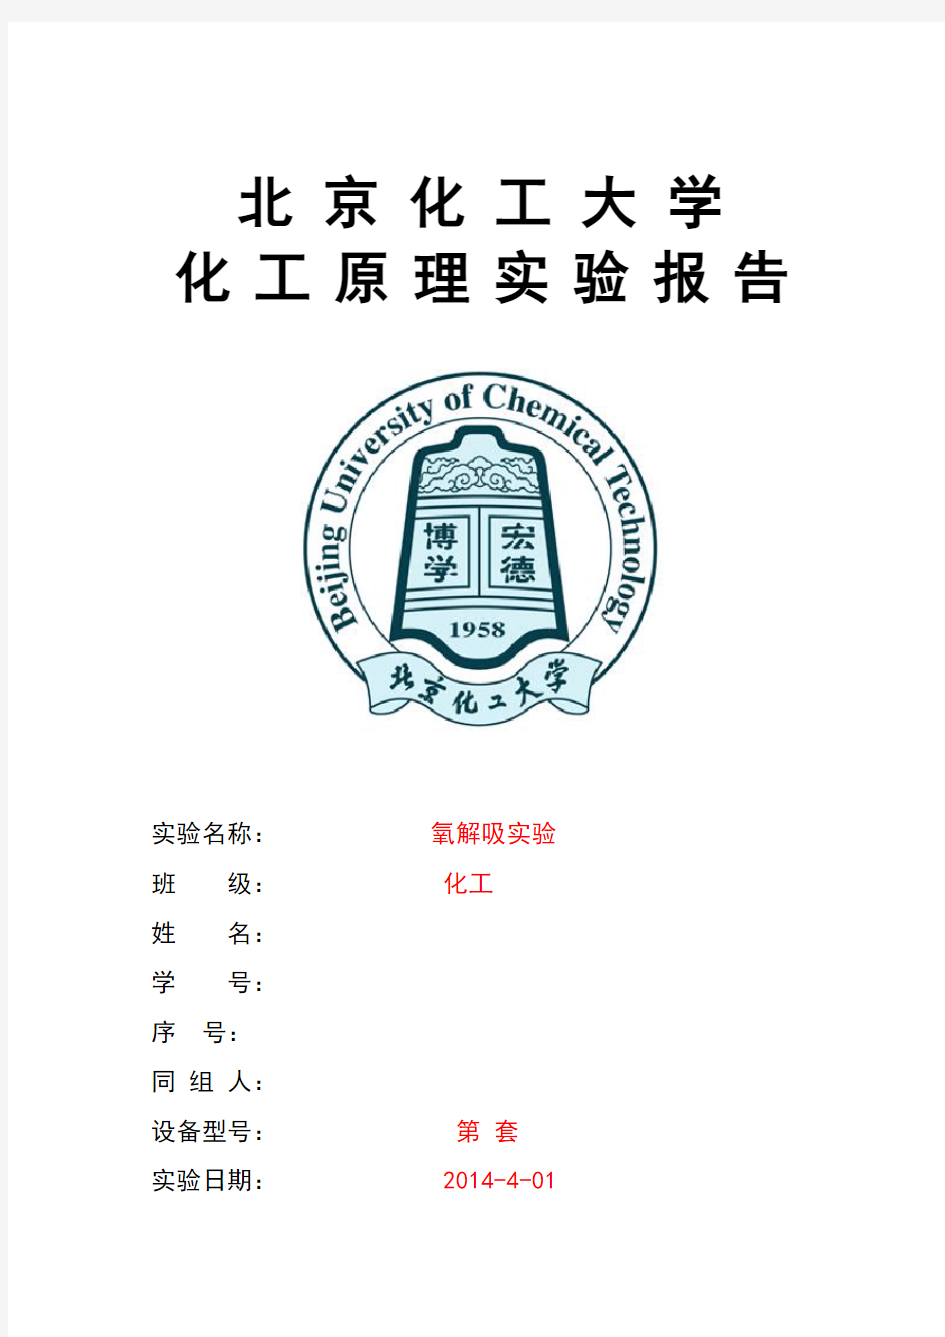 氧解吸实验报告 北京化工大学